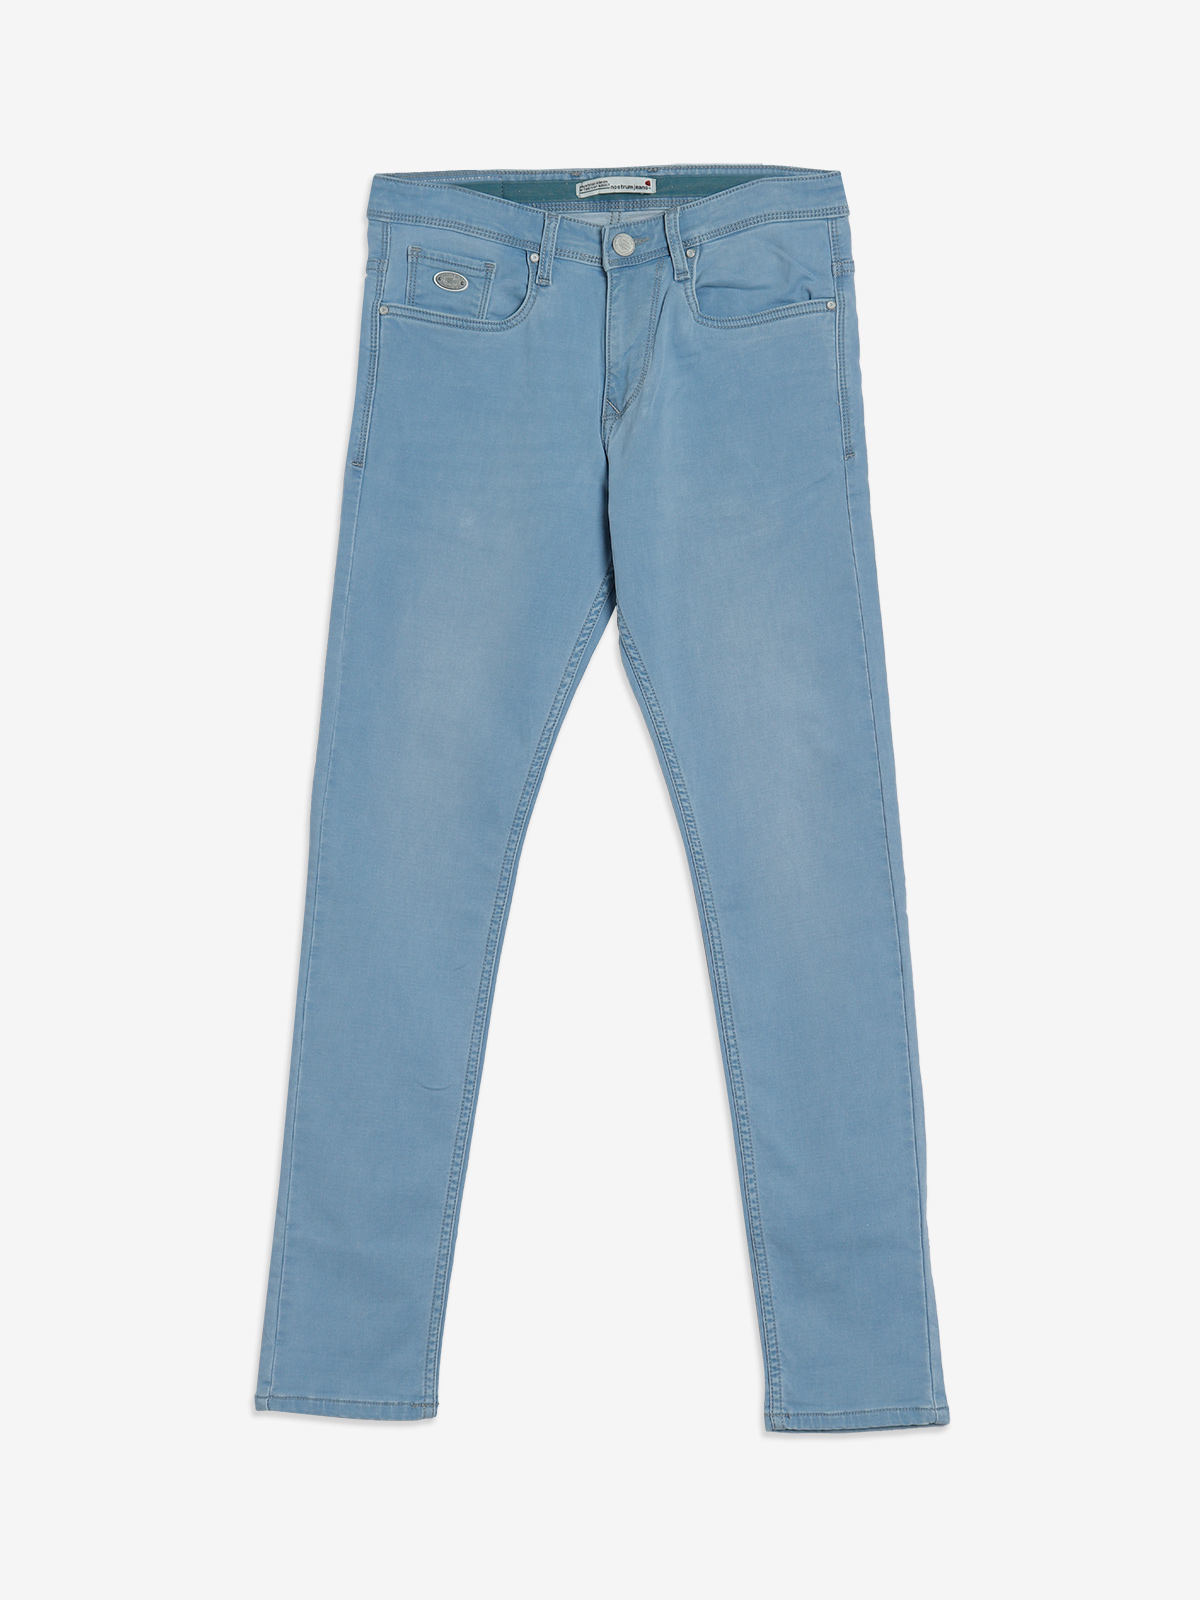 Men's blue jeans | Shop denim fashion online | H&M IE